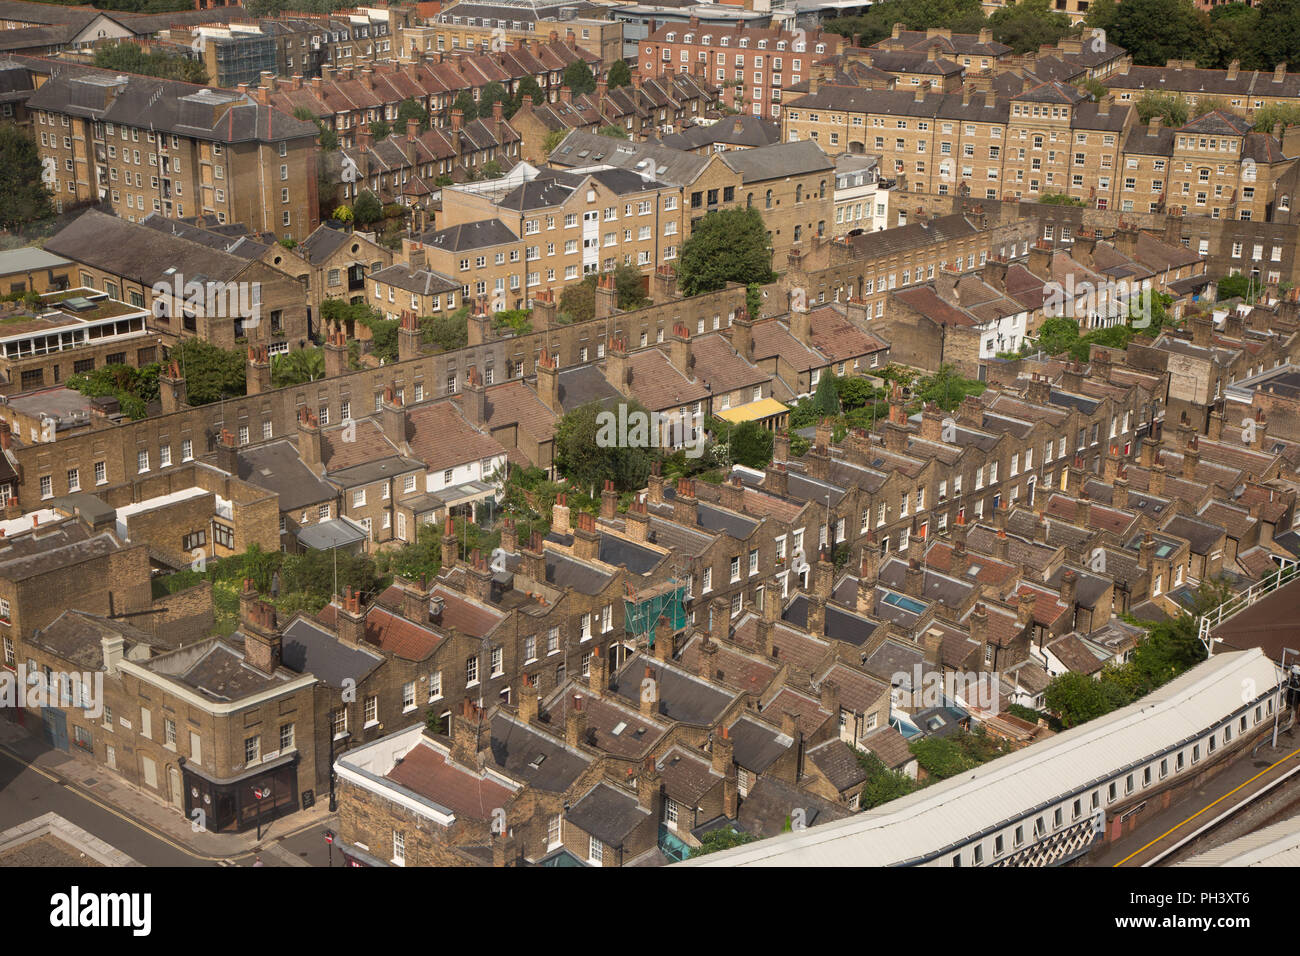 Rangées de logements à forte densité de population dans la région de Waterloo, le centre de Londres Banque D'Images